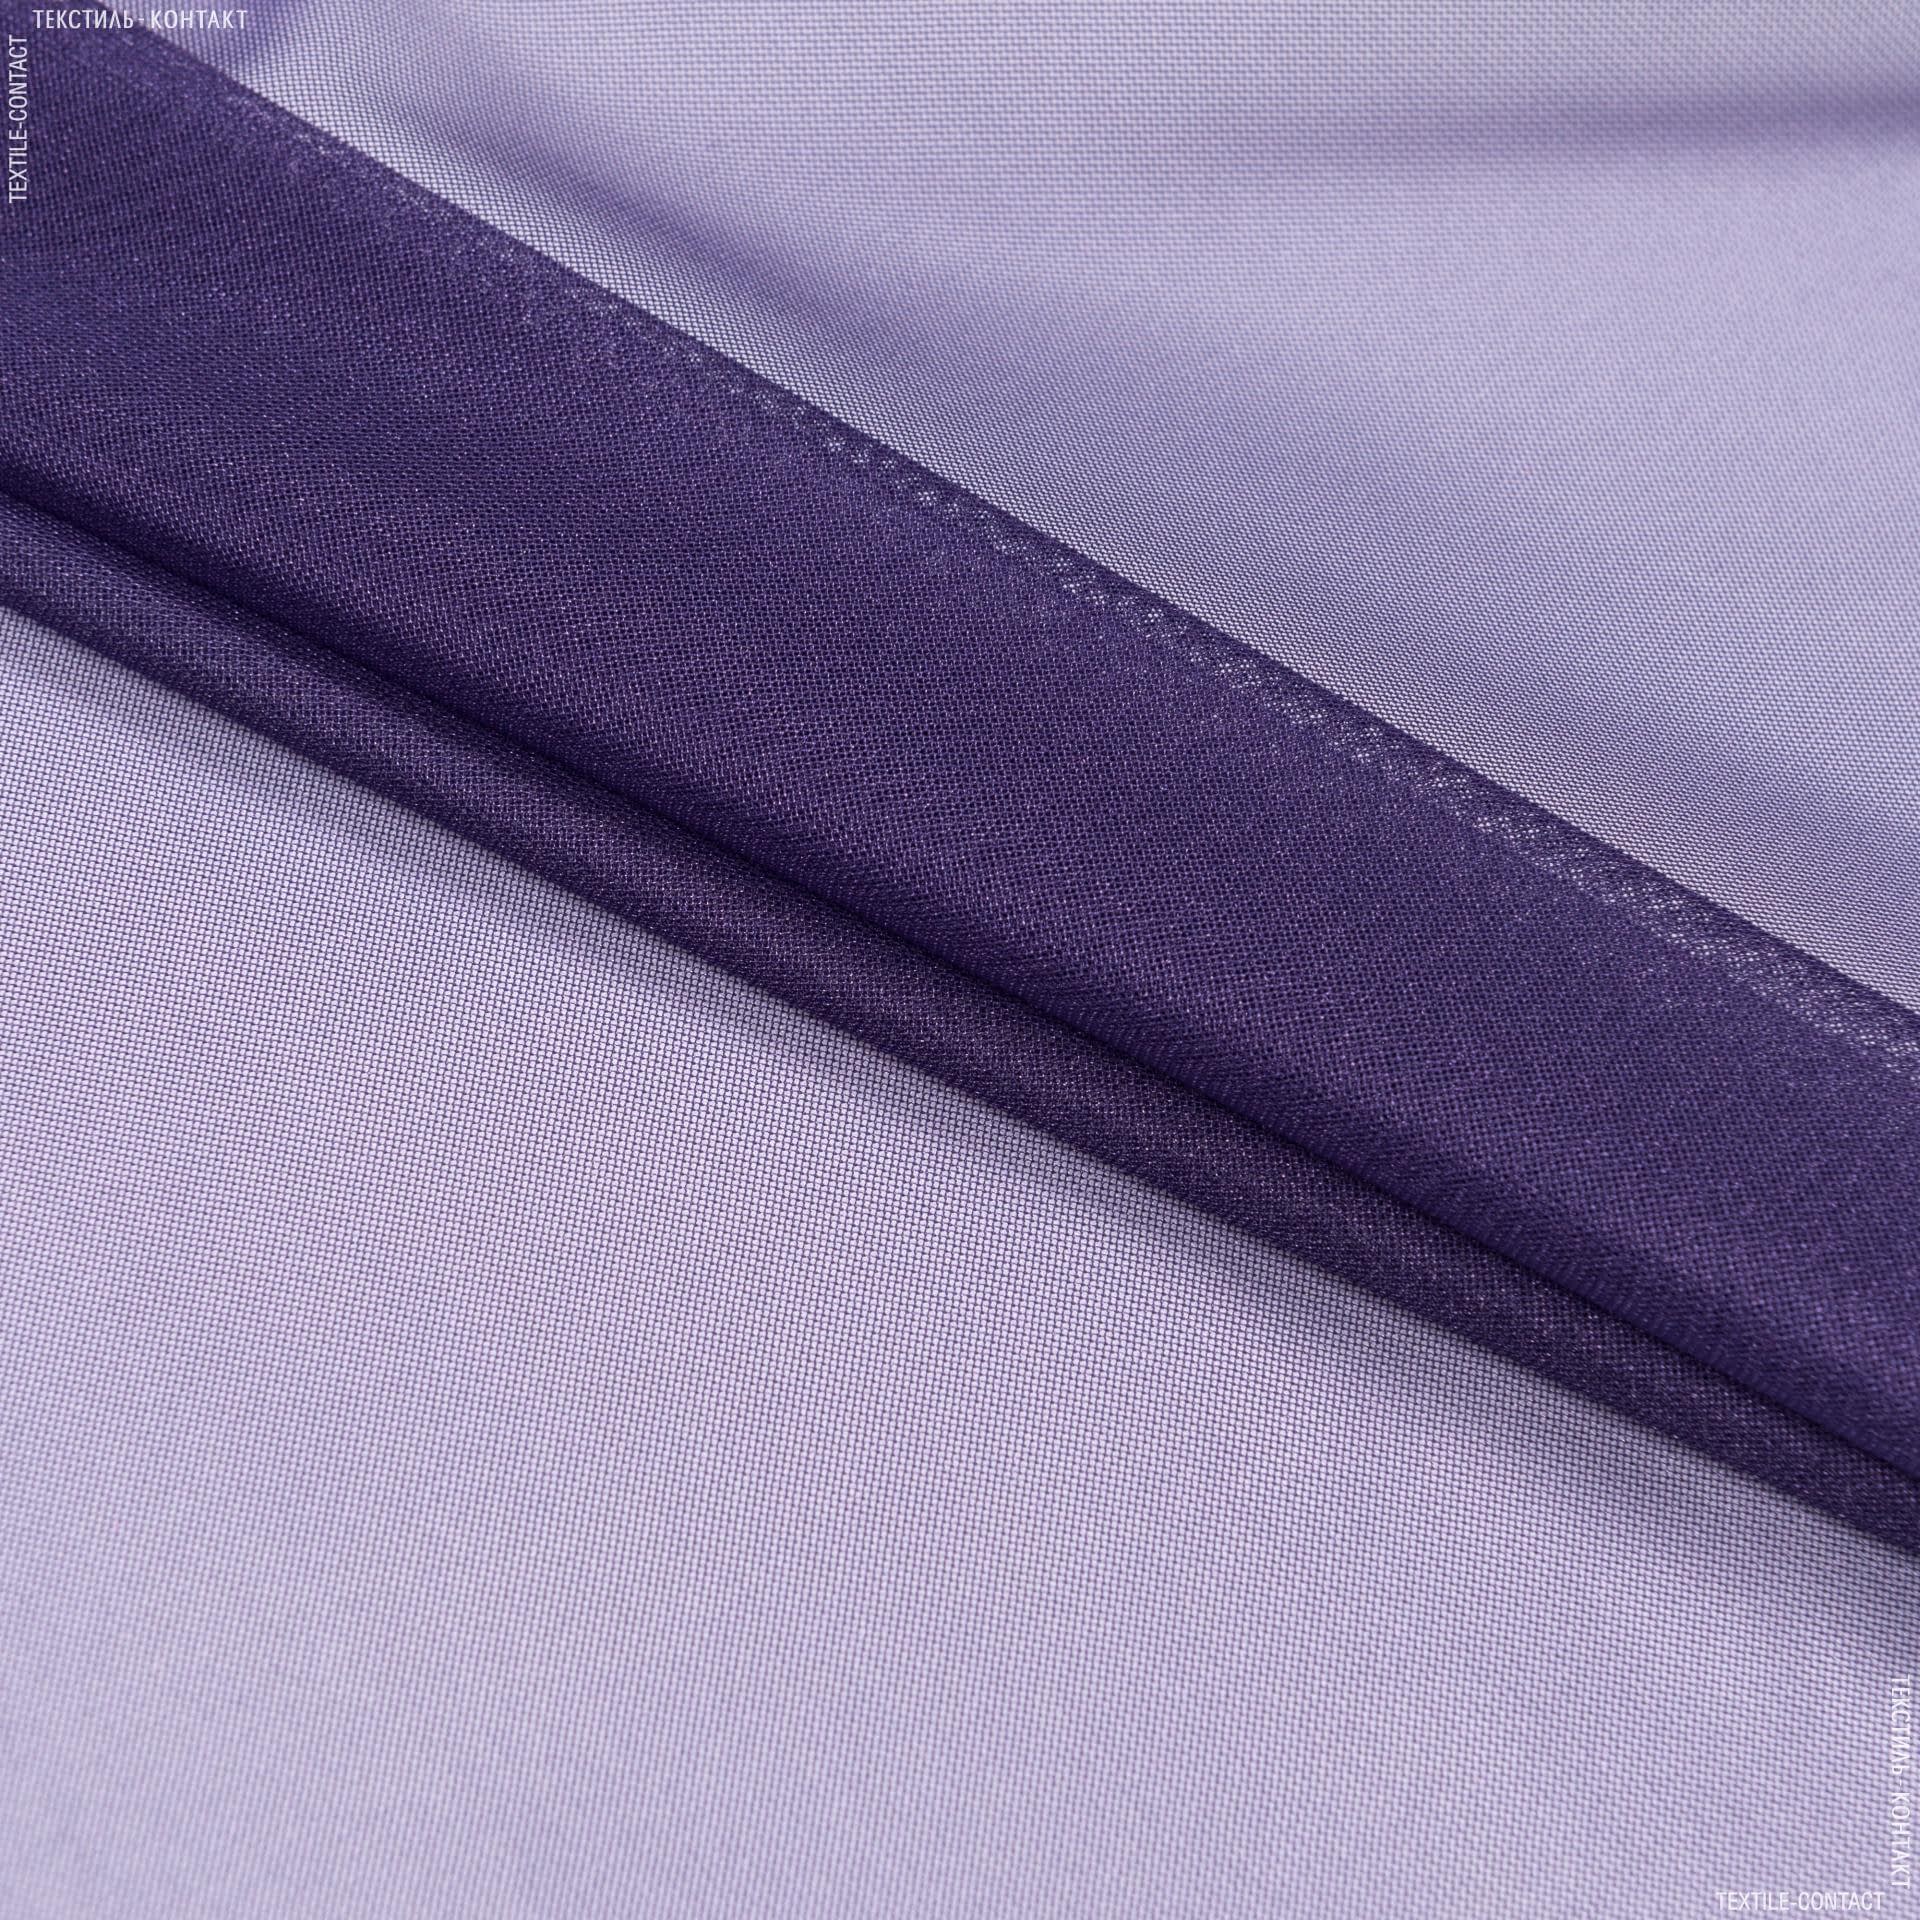 Ткани для платьев - Сетка блеск темно-лиловый